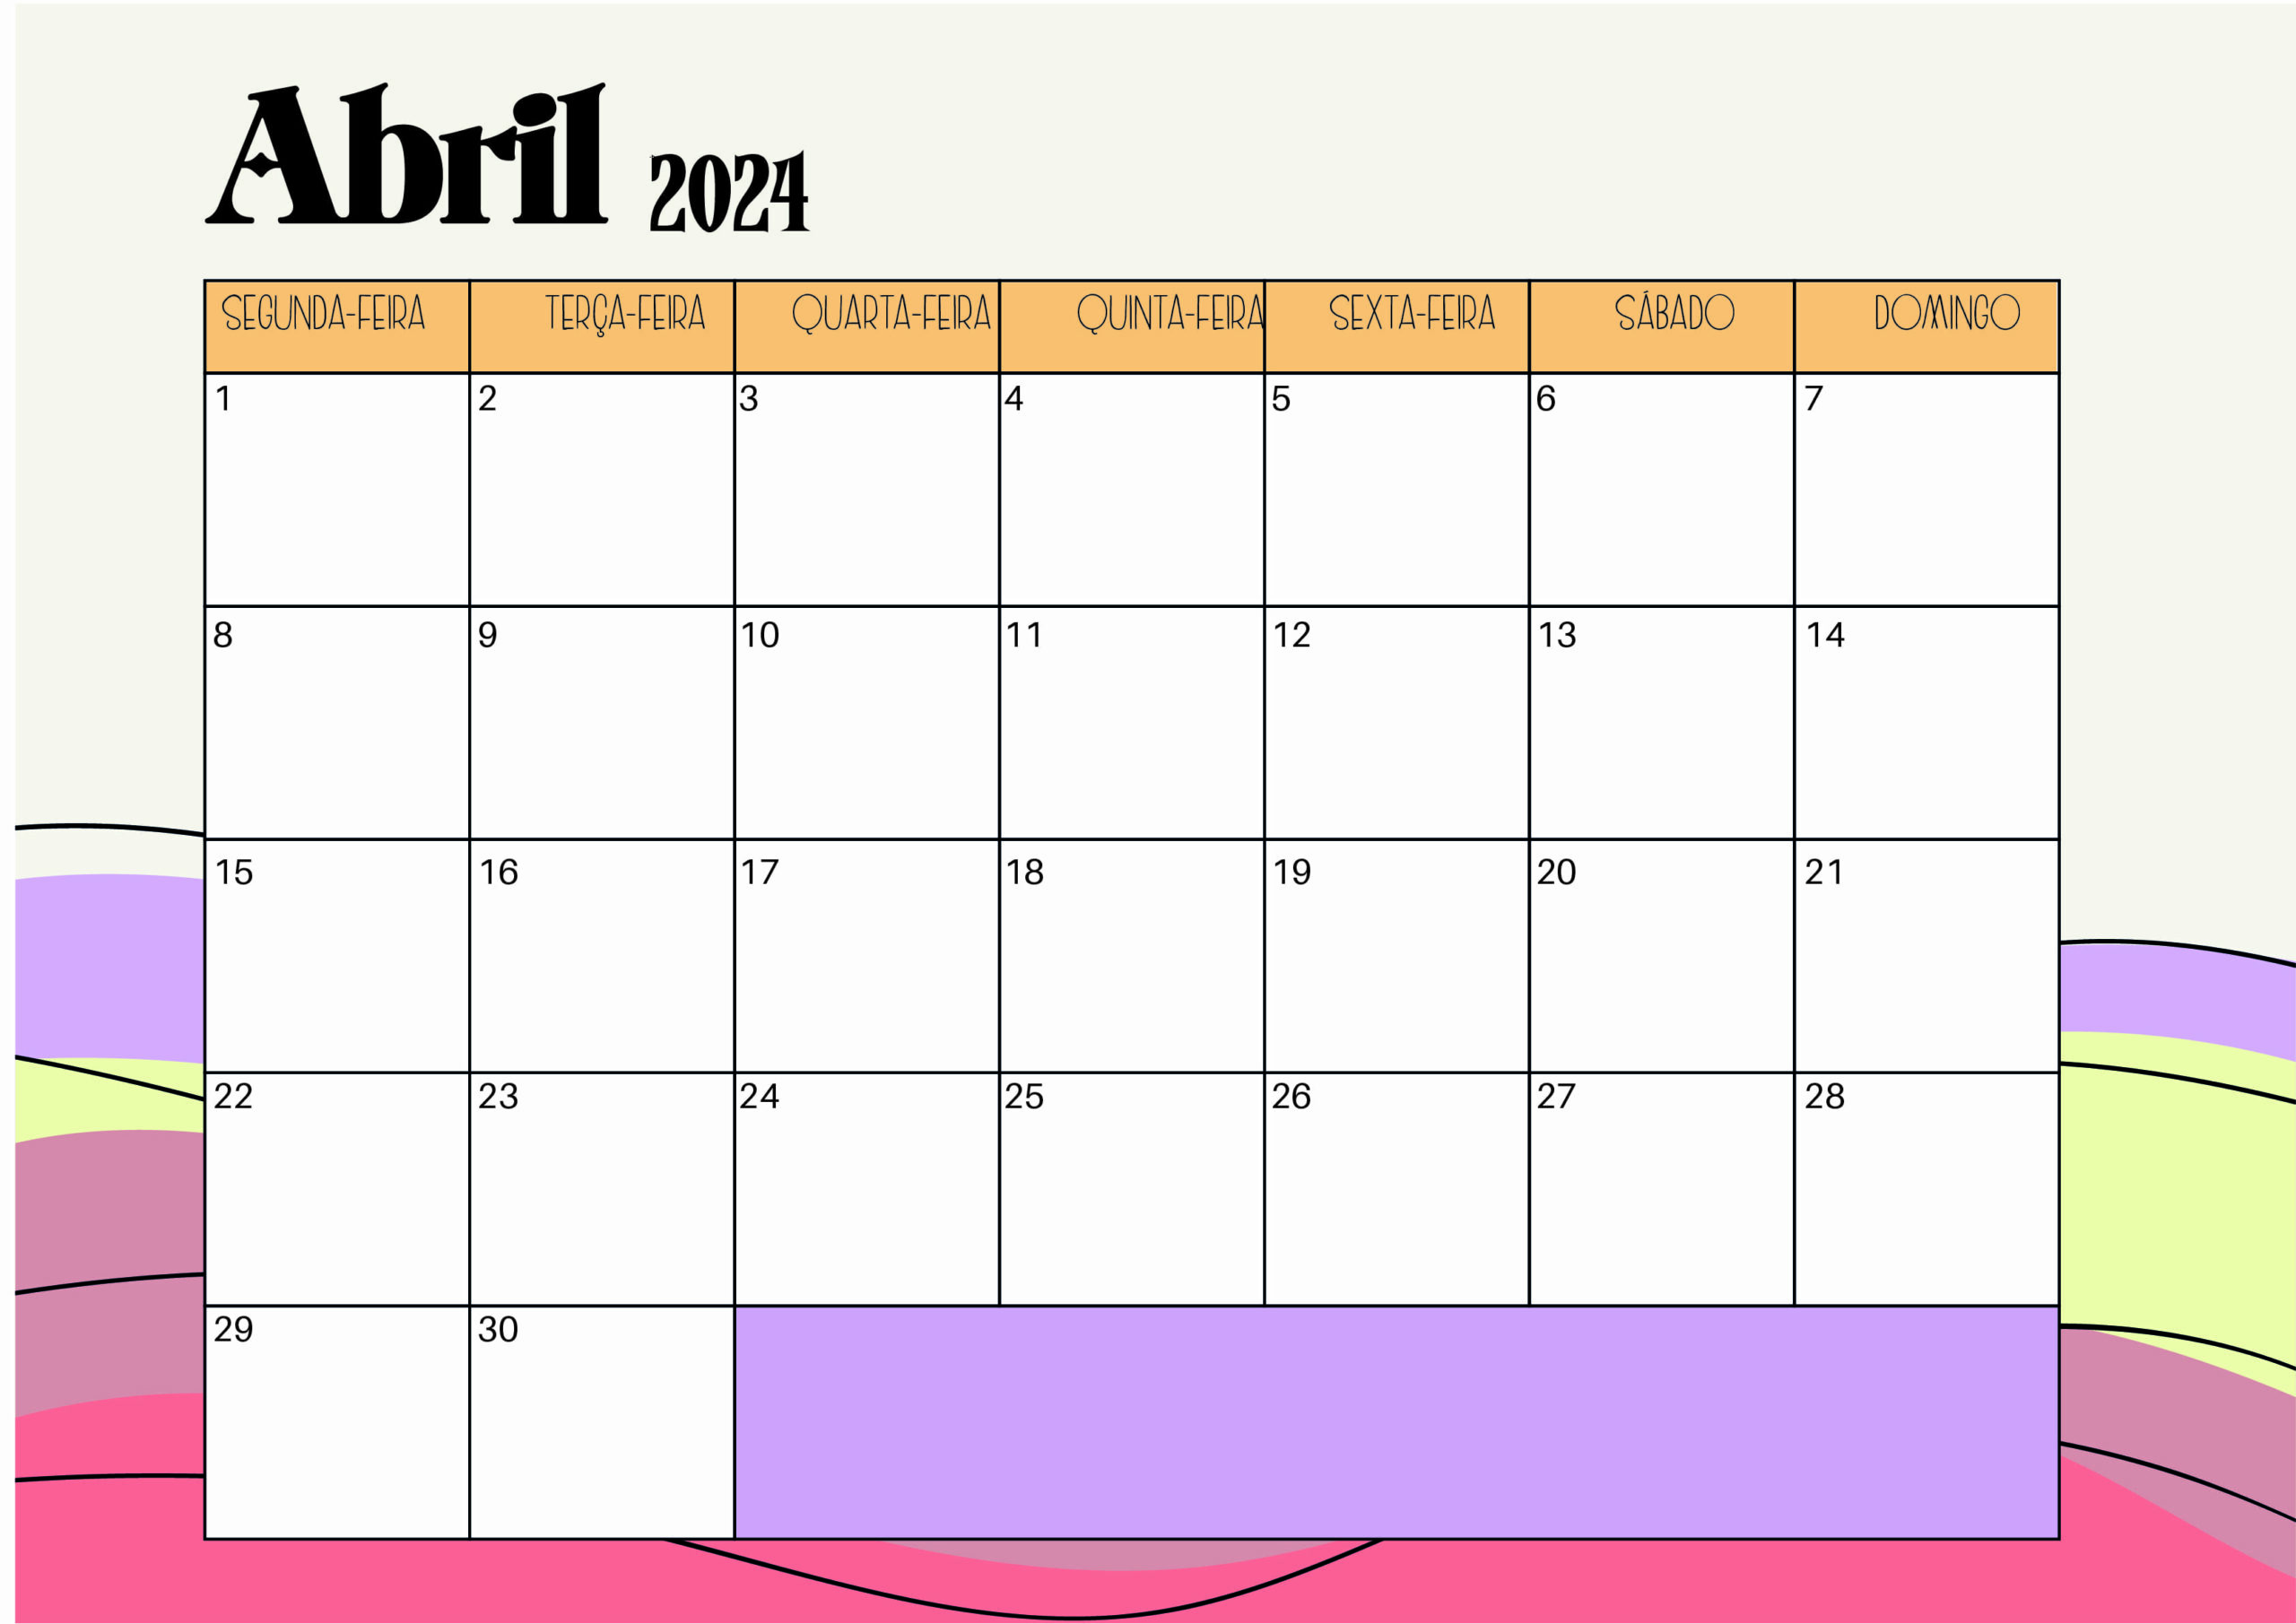 Calendário Abril 2024 para imprimir em PDF